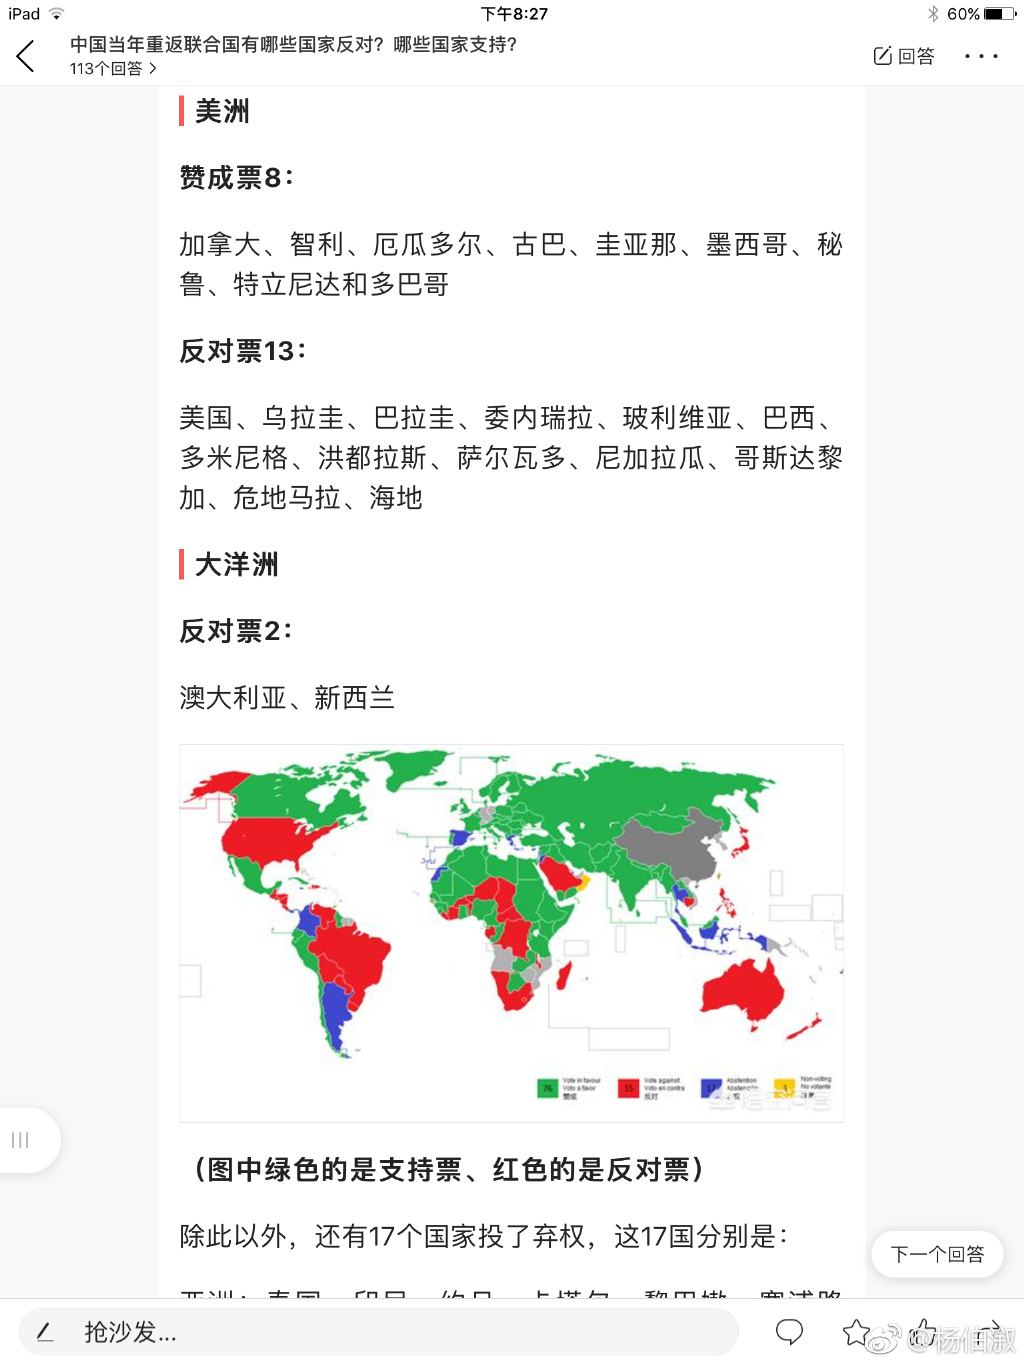 971年，也就是47年前，我们被联合国承认为中国唯一合法代表时，世界各国的投票结果。